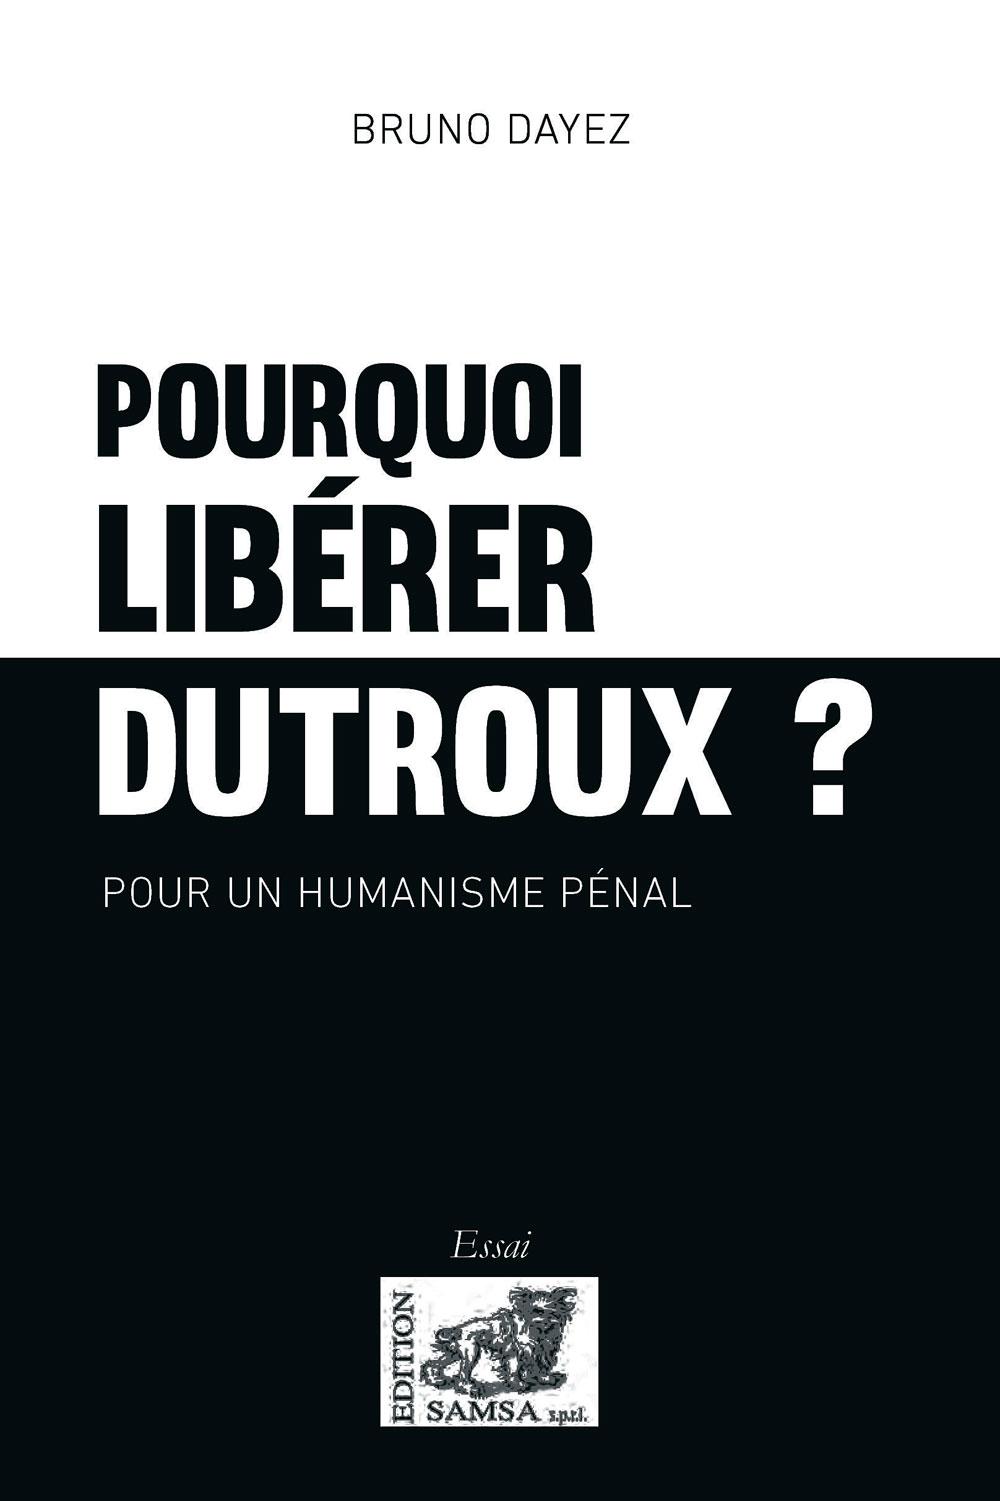 Pourquoi libérer Dutroux ?, par Bruno Dayez, 2018, éditions Samsa, 120 p.